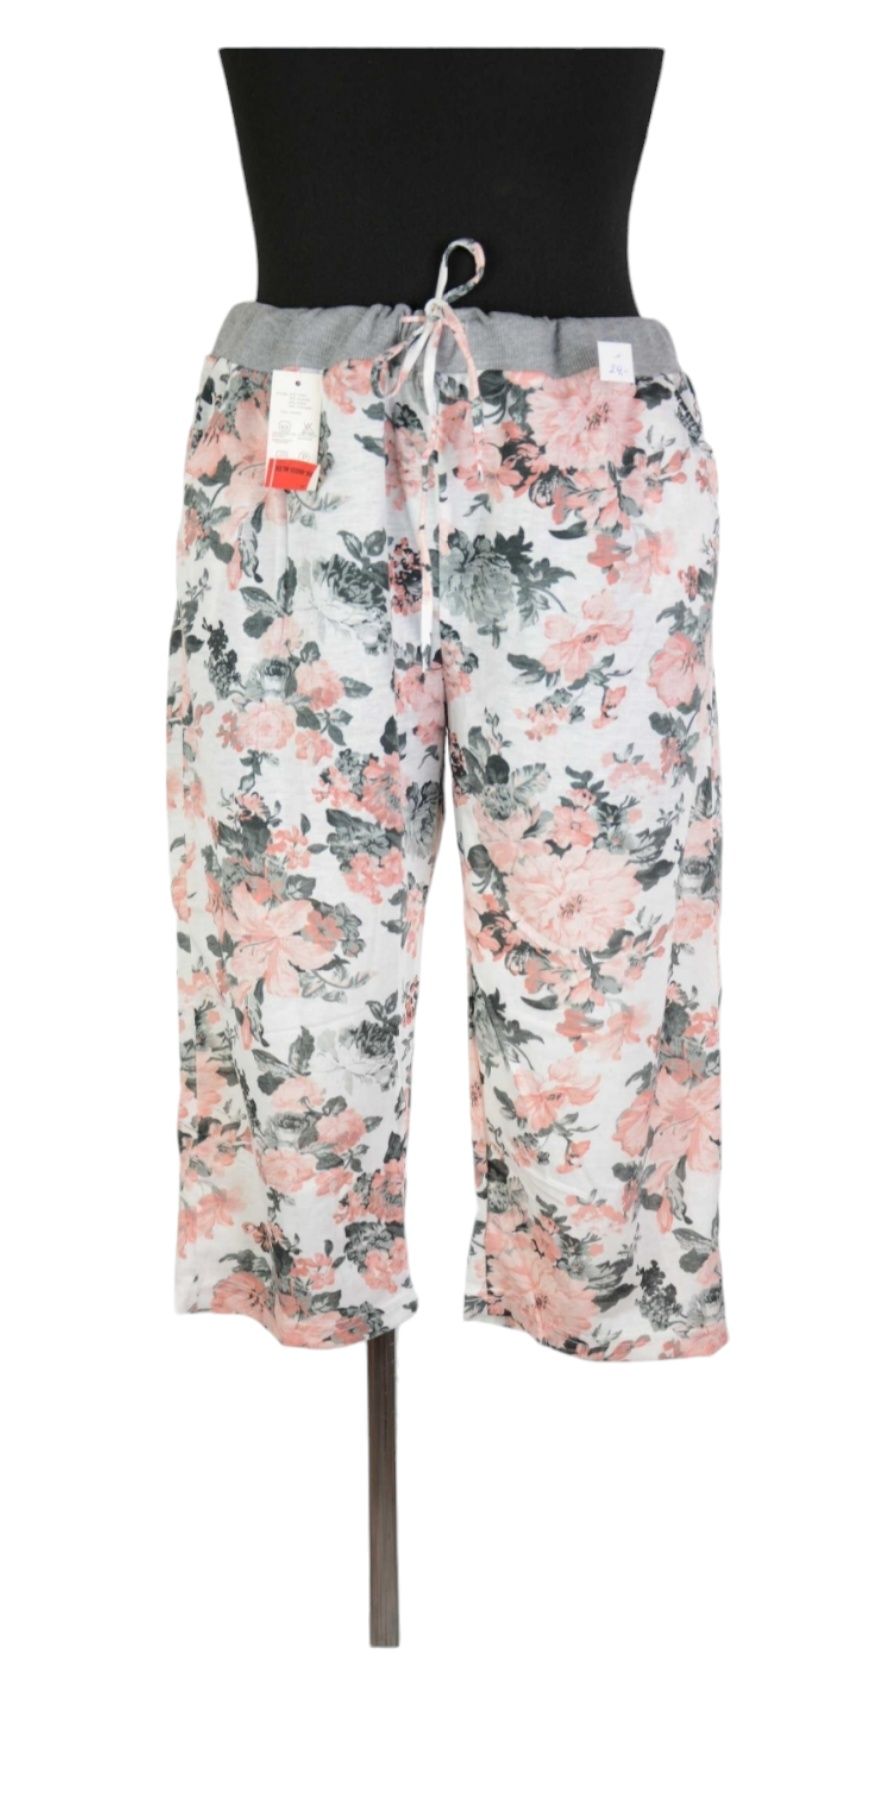 Rybaczki damskie, spodnie, białe, różowe kwiaty, rozmiar XL